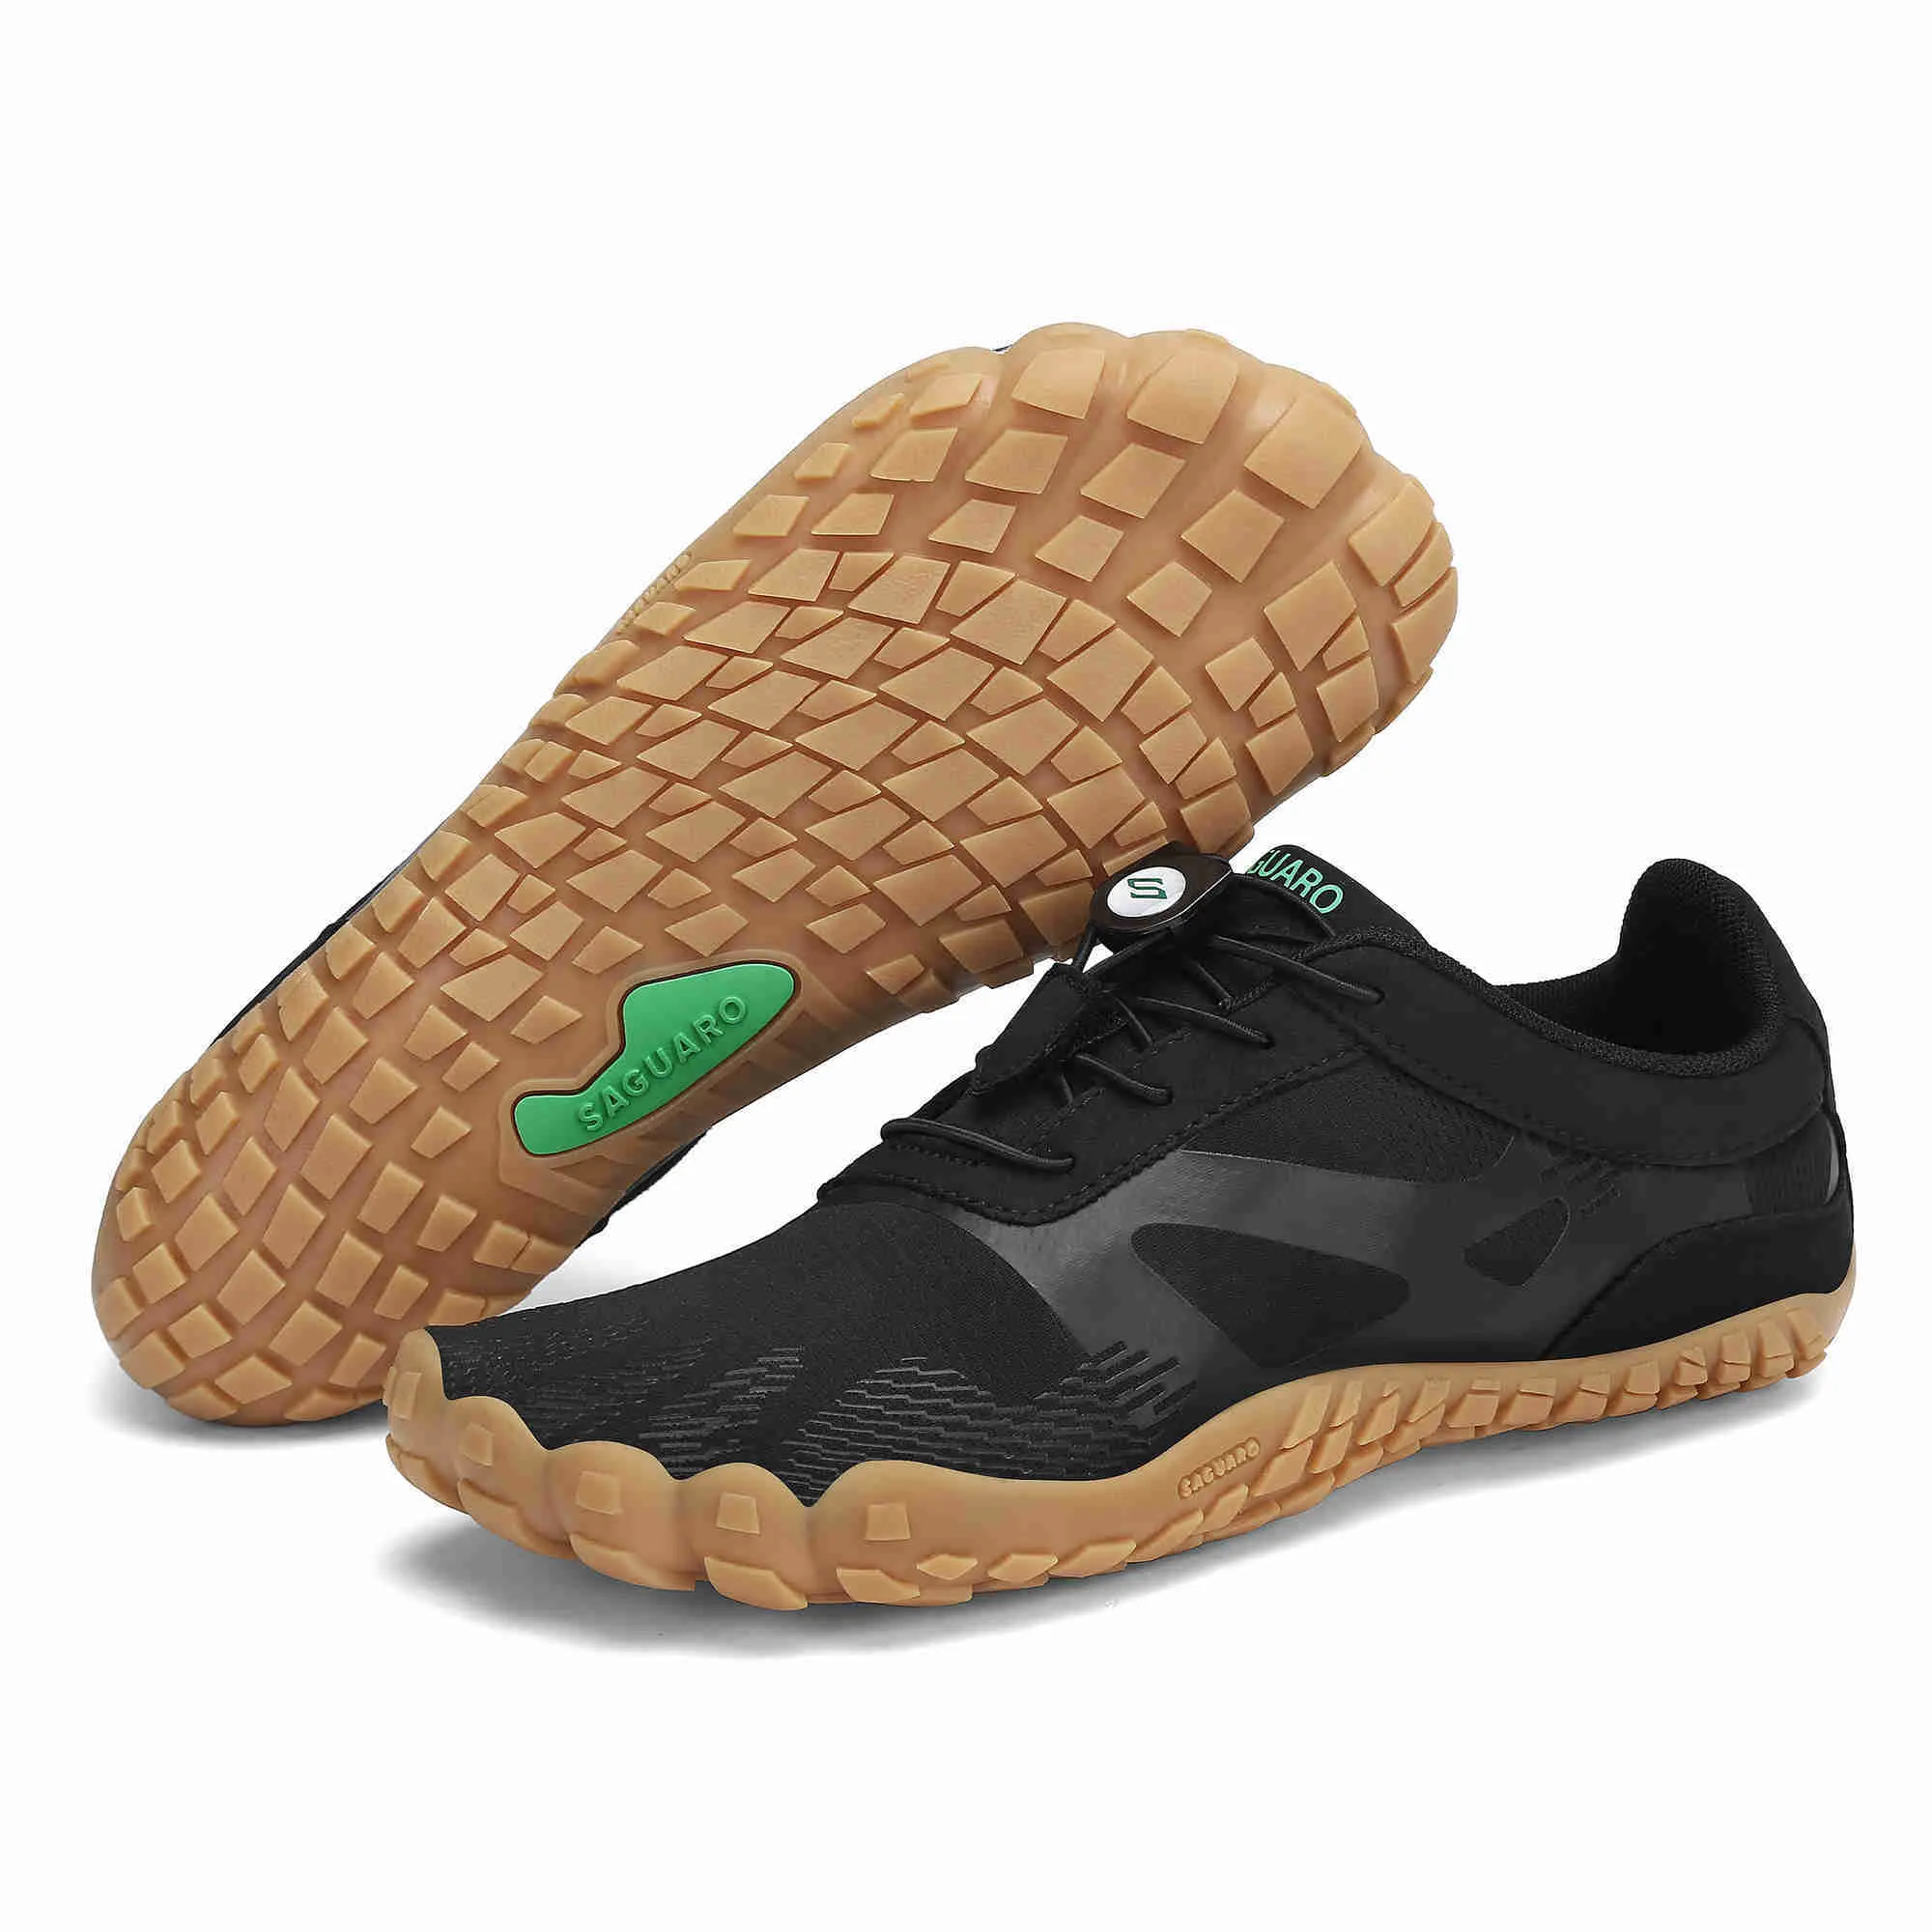 HBP Balık Olmayan Erkekler Kadın Minimalist Trail Koşu Ayakkabıları Fitness Spor Salonu Dağ Koşu Asfalt Su Ayakkabıları